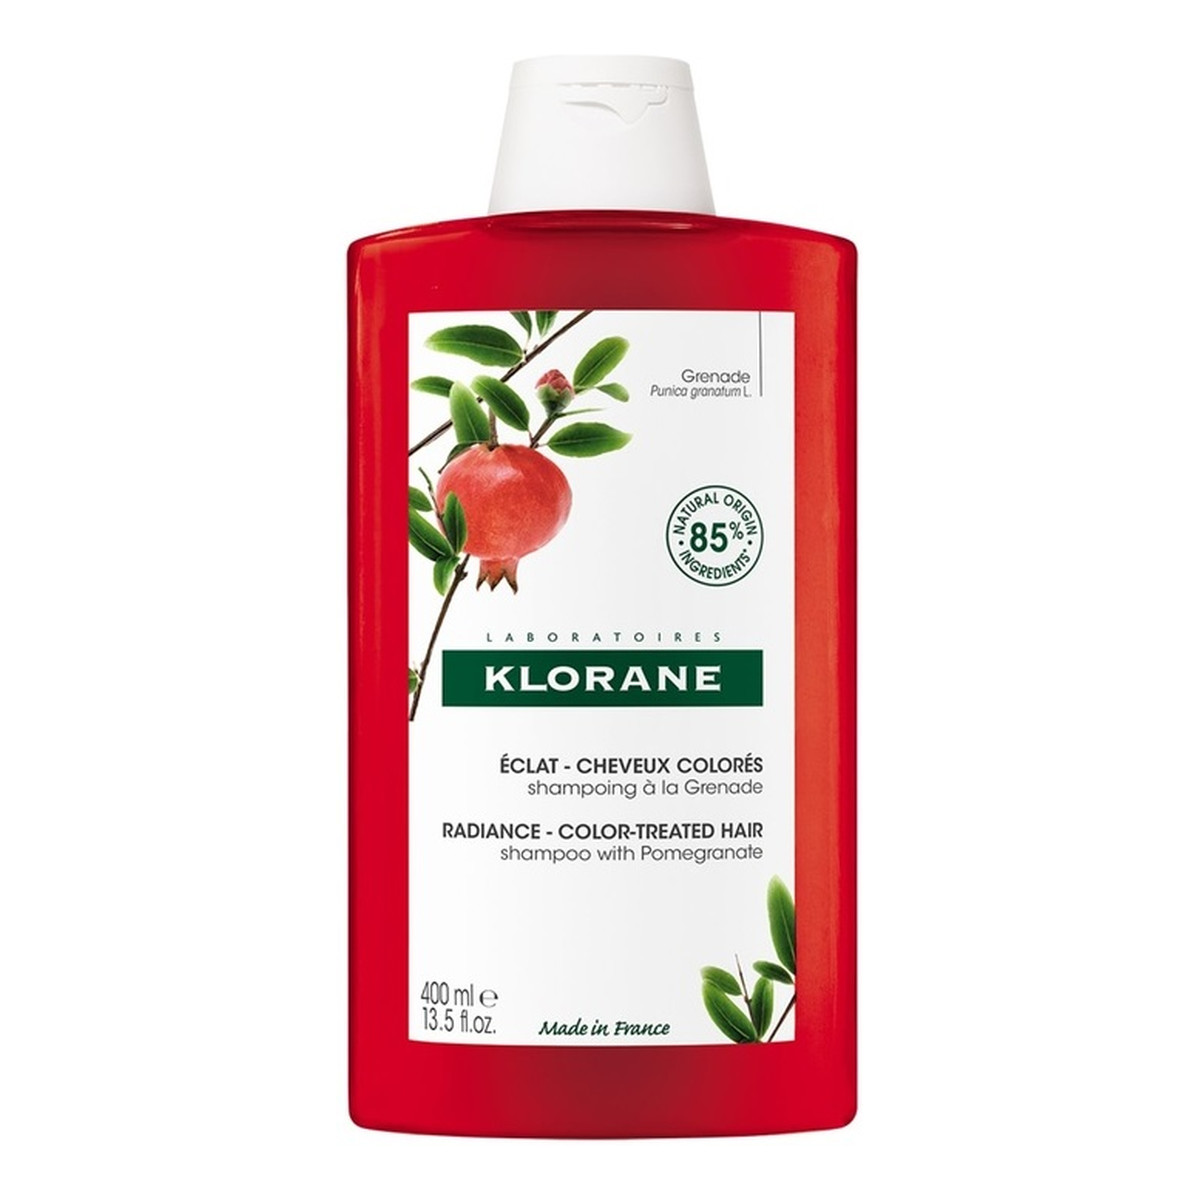 Klorane Radiance shampoo szampon do włosów farbowanych 400ml